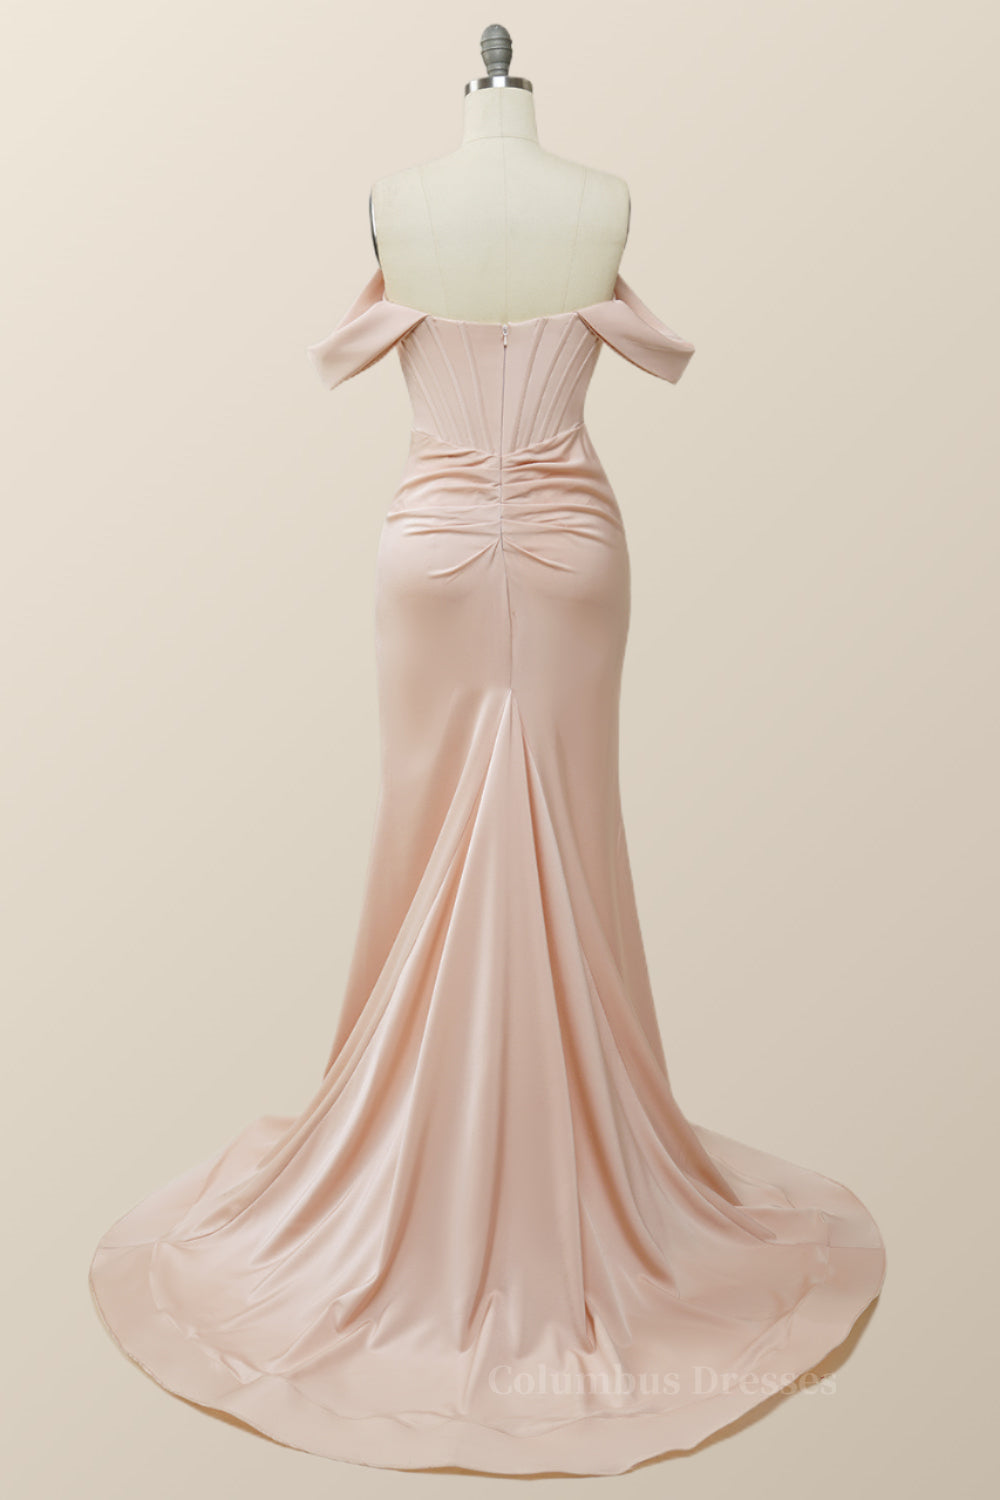 Summer Dress, Elegant Pink Off the Shoulder Mermaid Long Formal Gown